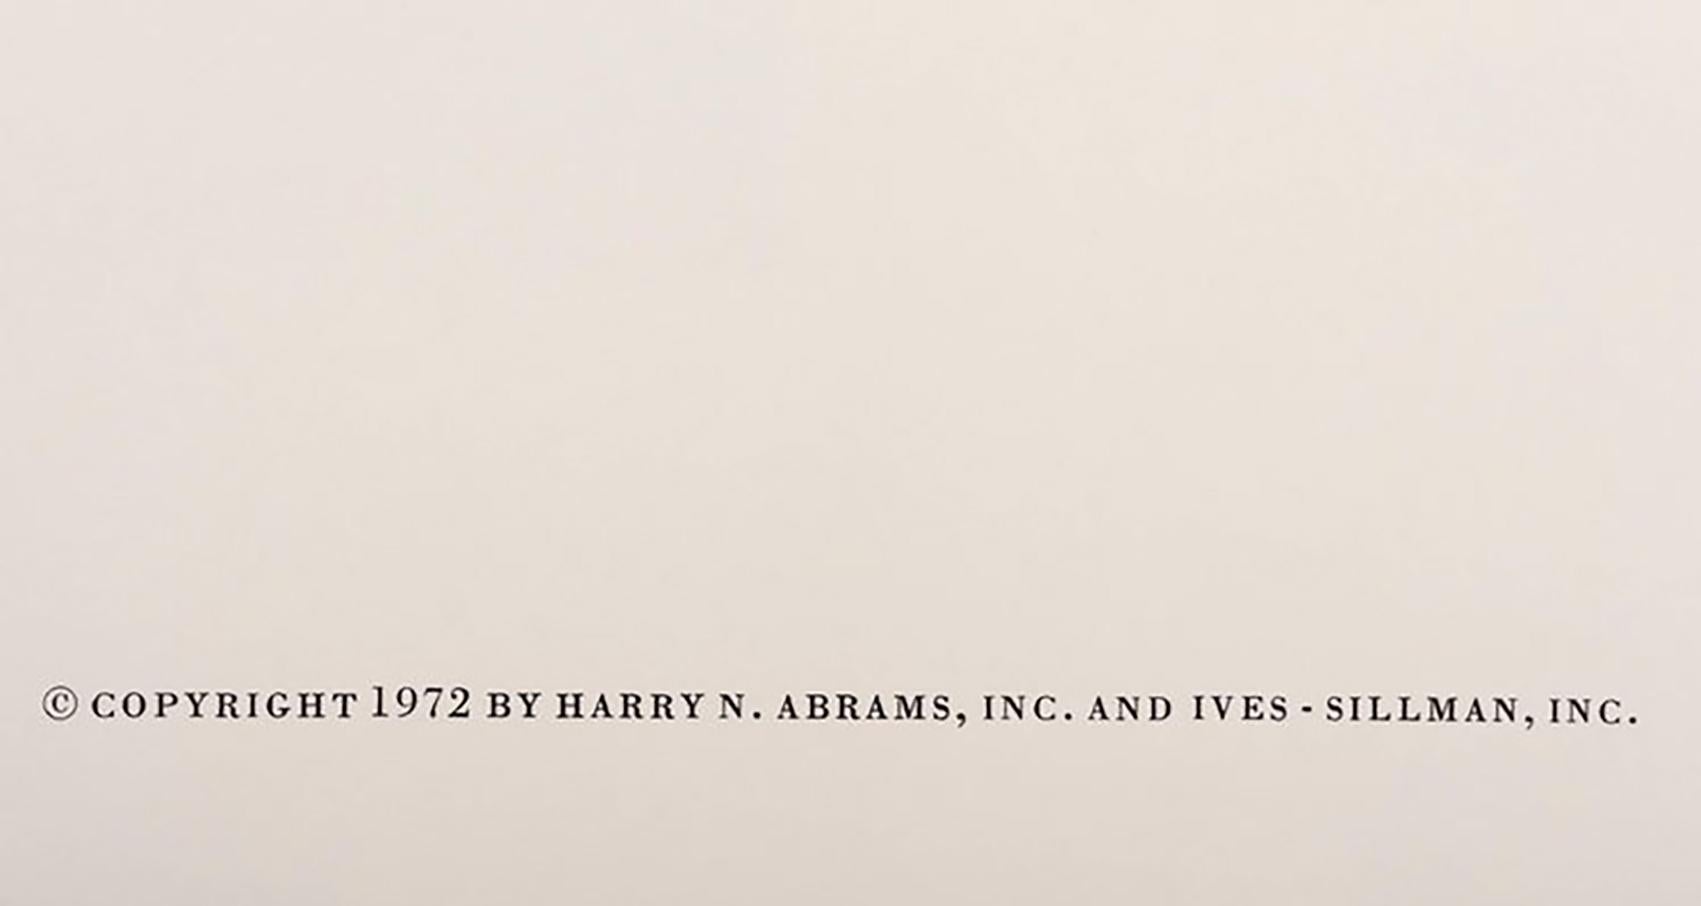 Un superbe exemple de sérigraphie de deux pages tirée de l'ouvrage Formulation de Josef Alber : Articulation, 1972, de Josef Alber. Cet exemple est le portefeuille 1 du dossier 12, 1972. 

Tiré à 1000 exemplaires pour Harry N. abrams Inc. et Ives